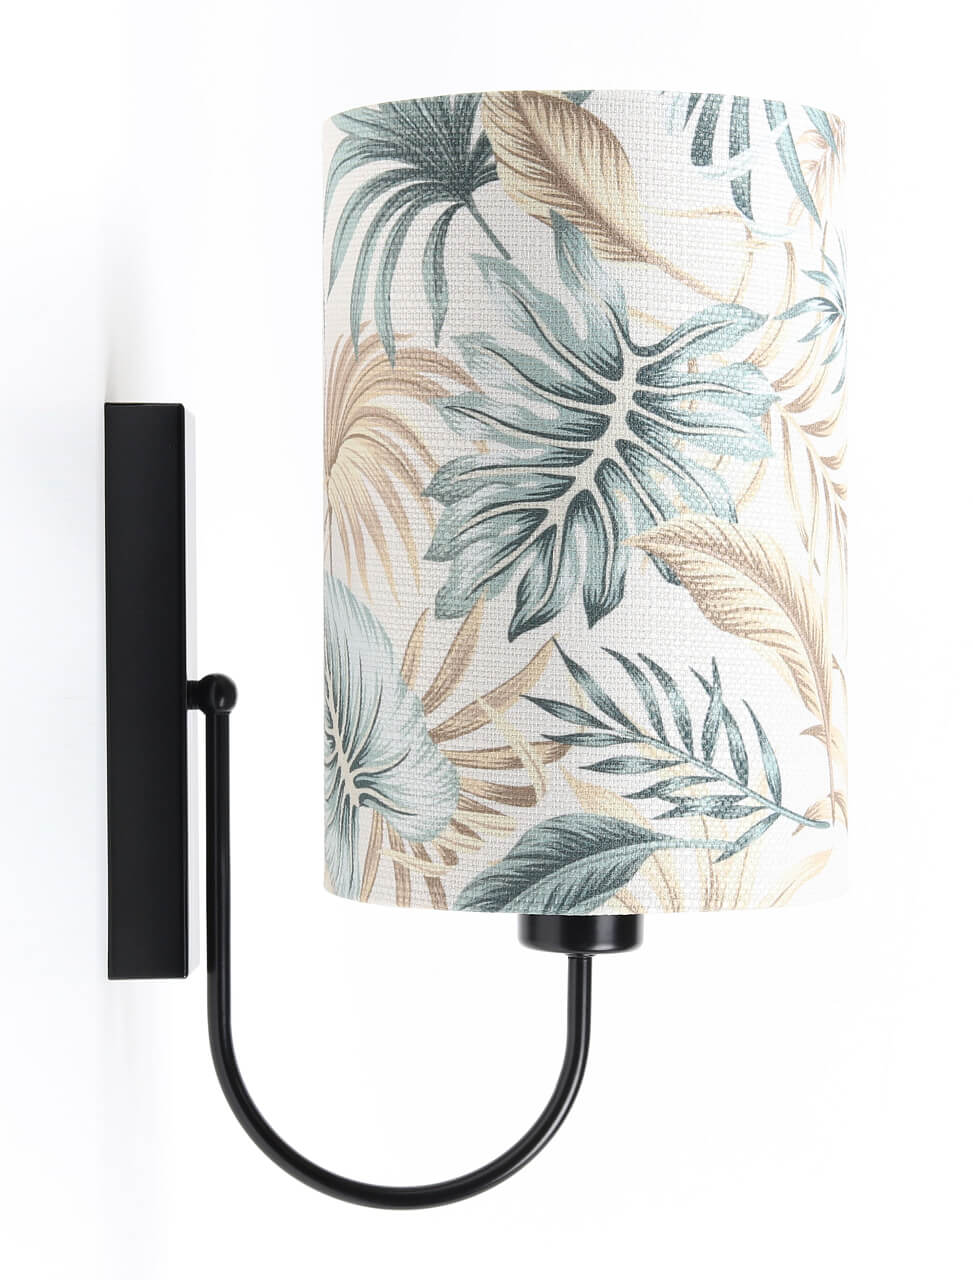 Kremowy kinkiet, lampa ścienna w kształcie tuby z abażurem w liście palmy i monstery PORTLAND - BPS Koncept zdjęcie 2